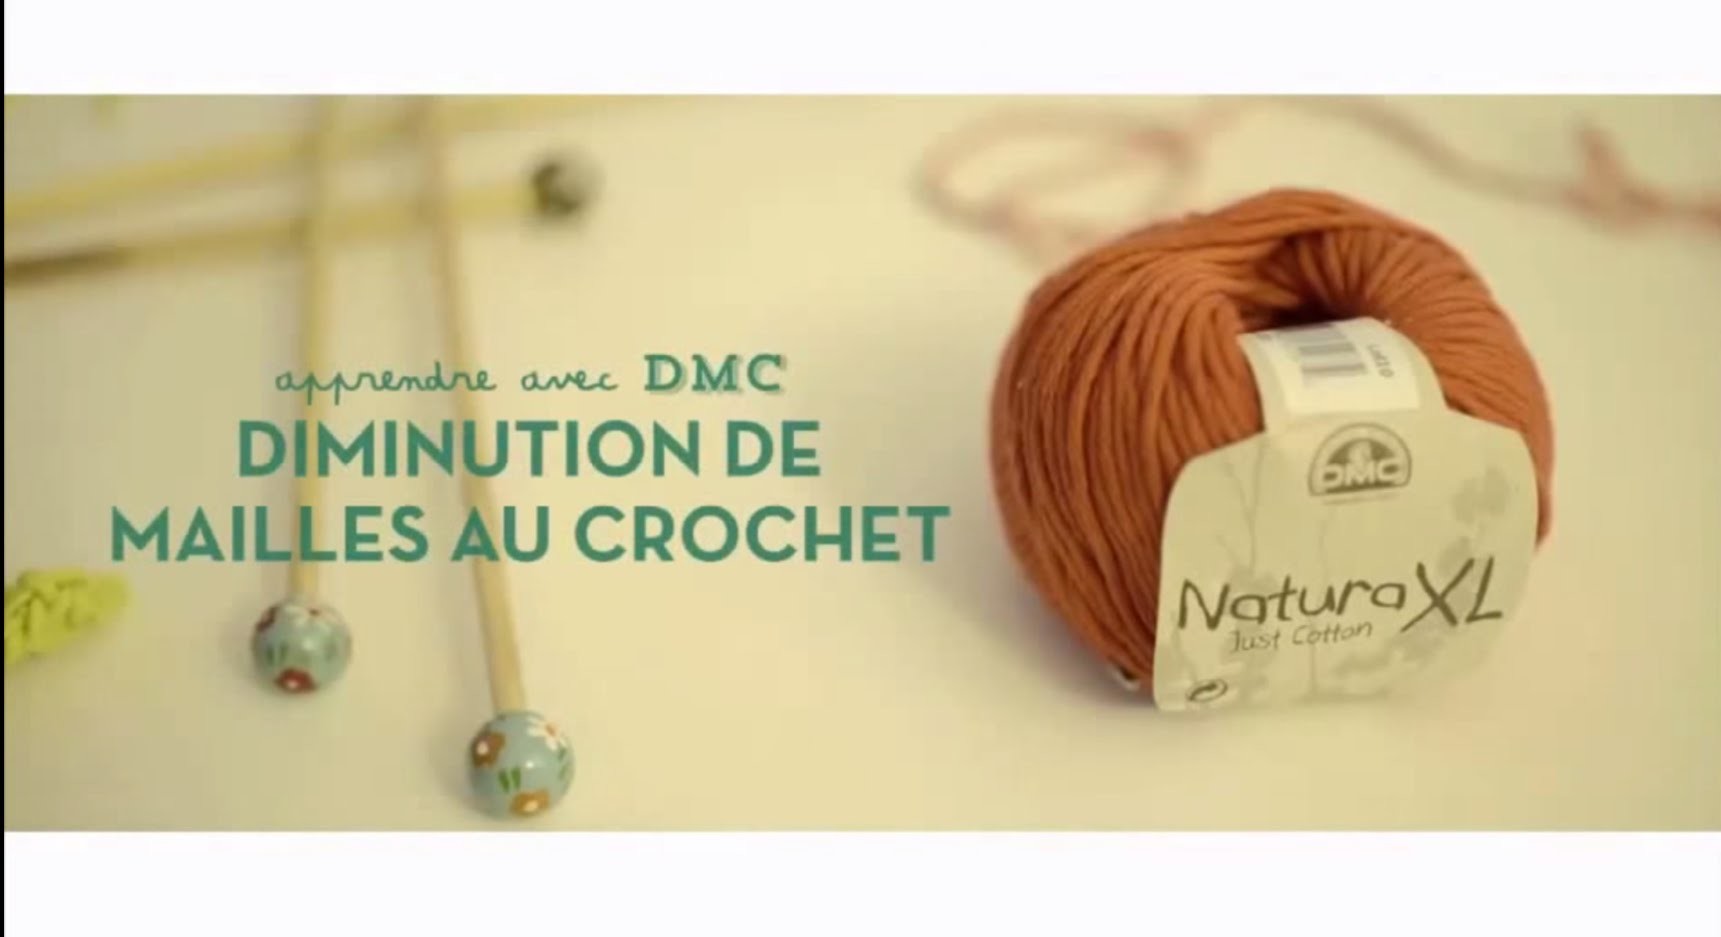 DIY Crochet : Diminution de mailles au crochet avec DMC